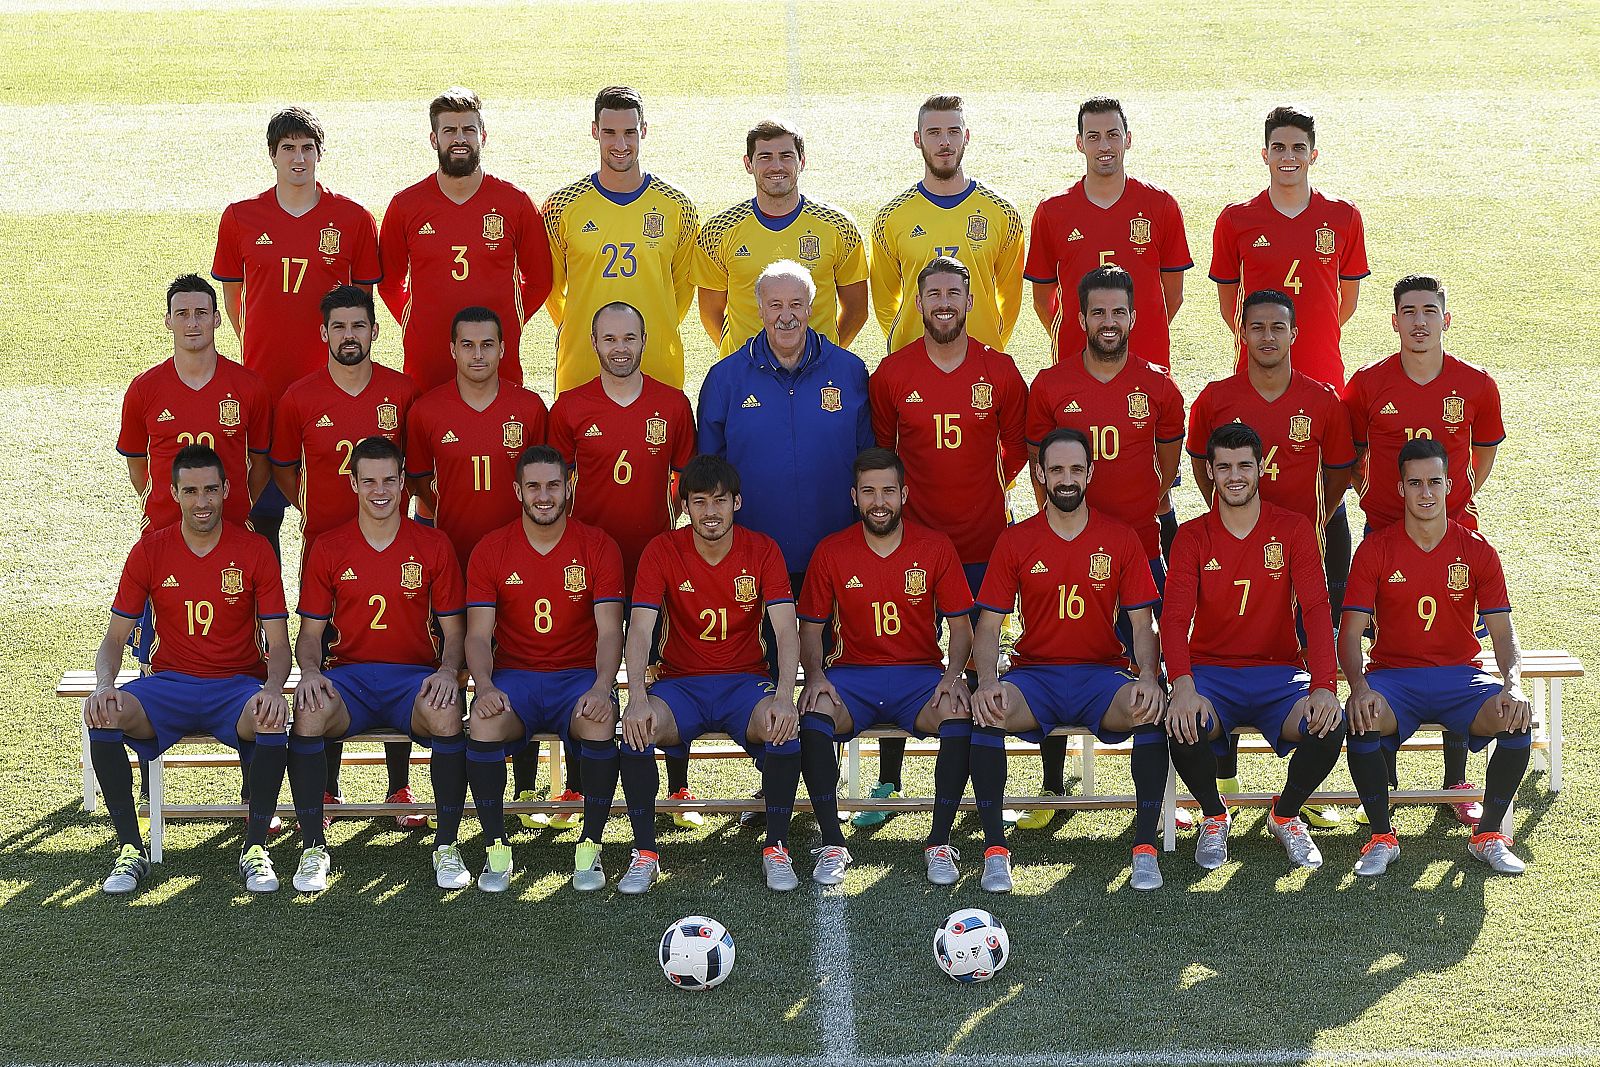 Fotografía oficial de la Roja antes de su participación en la Eurocopa 2016 de Francia.